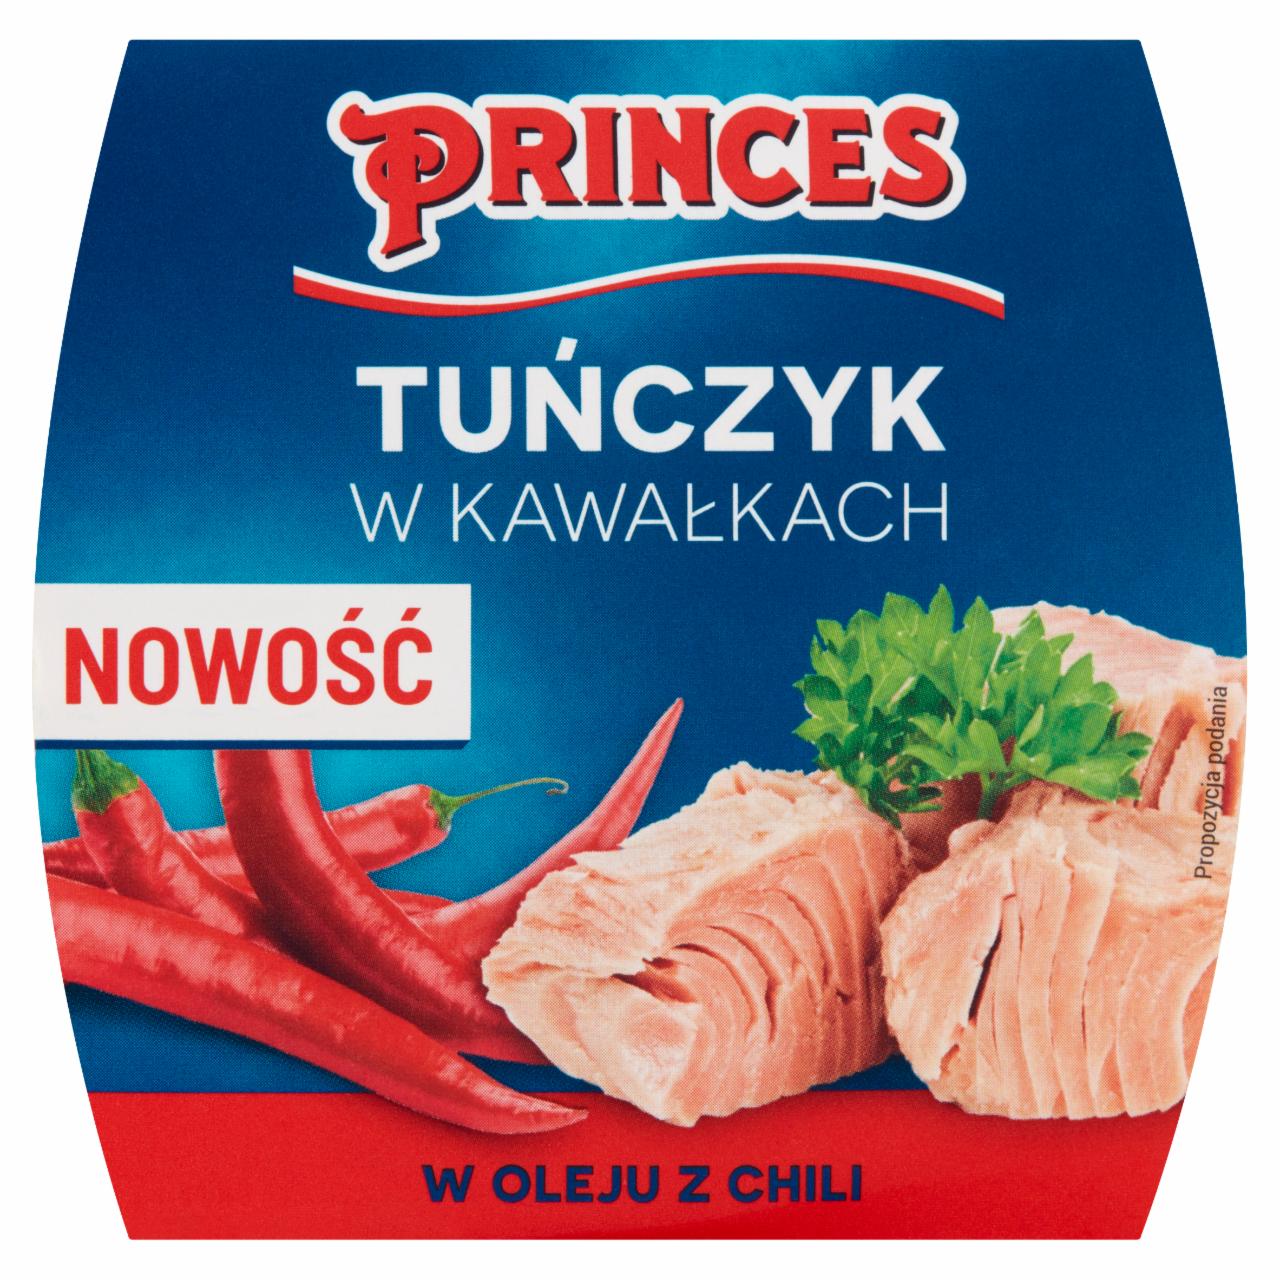 Zdjęcia - Princes Tuńczyk w kawałkach w oleju z chili 160 g